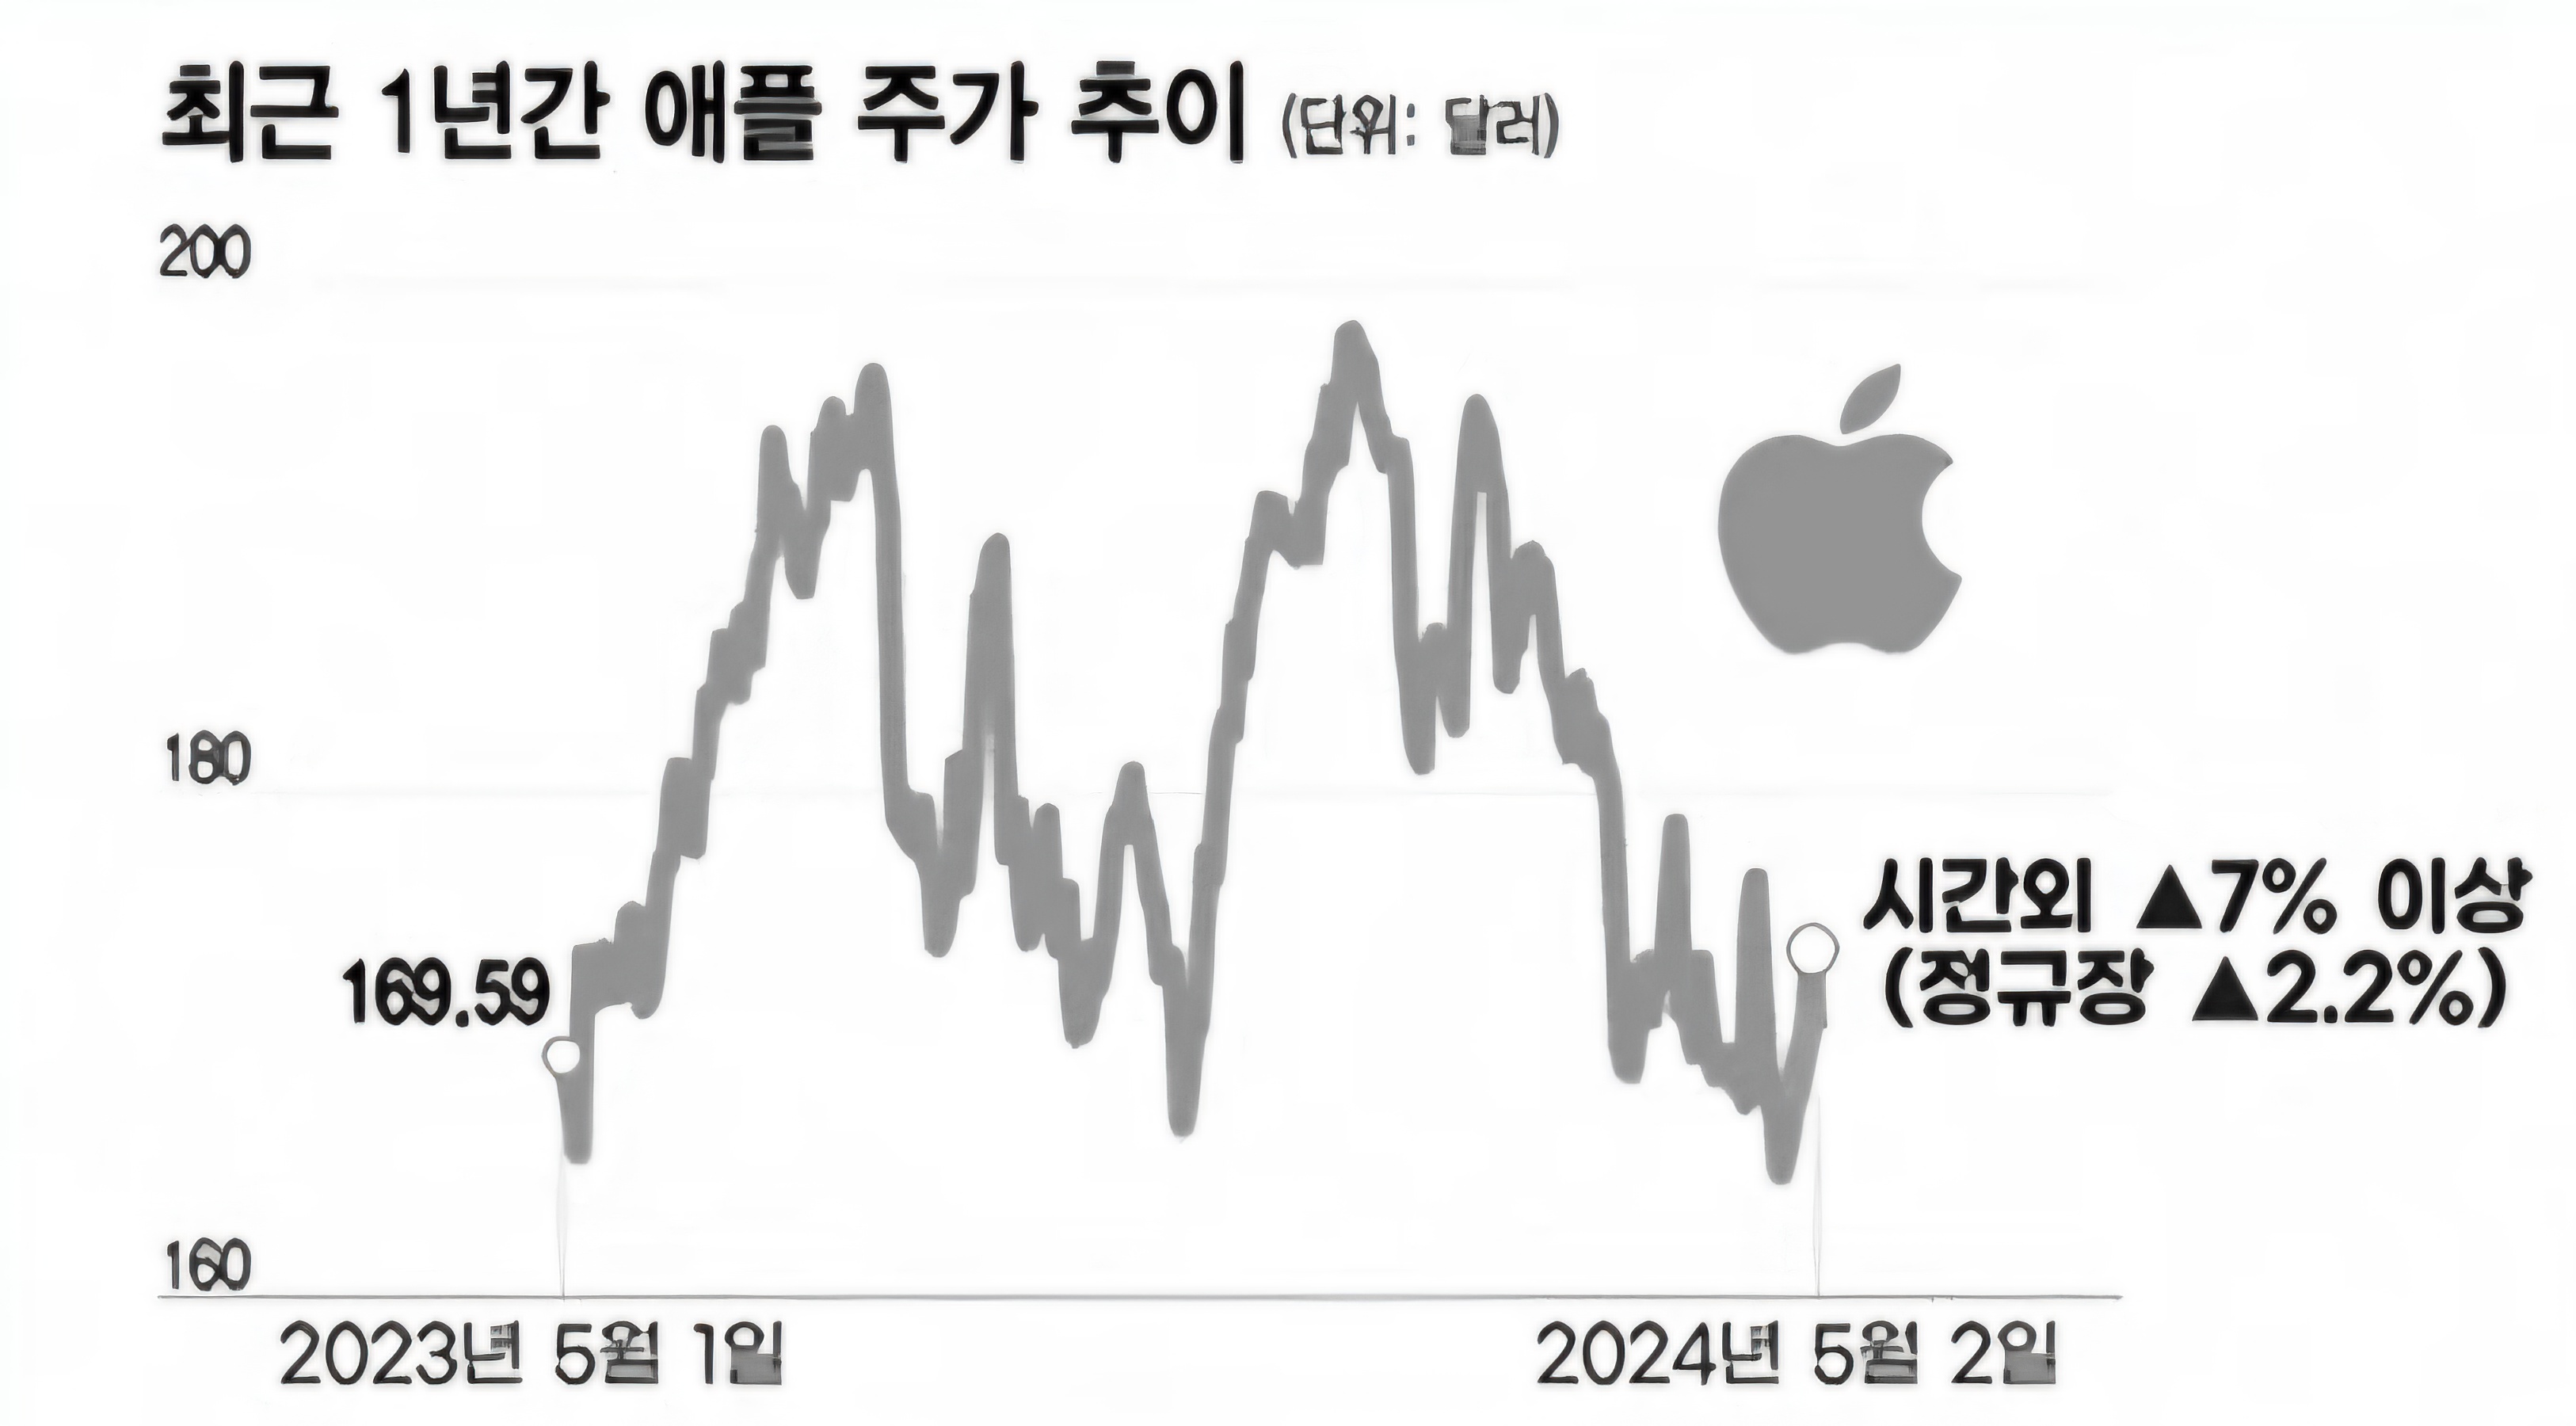 애플 24년 1분기 실적발표, 사상최대규모 자사주 매입